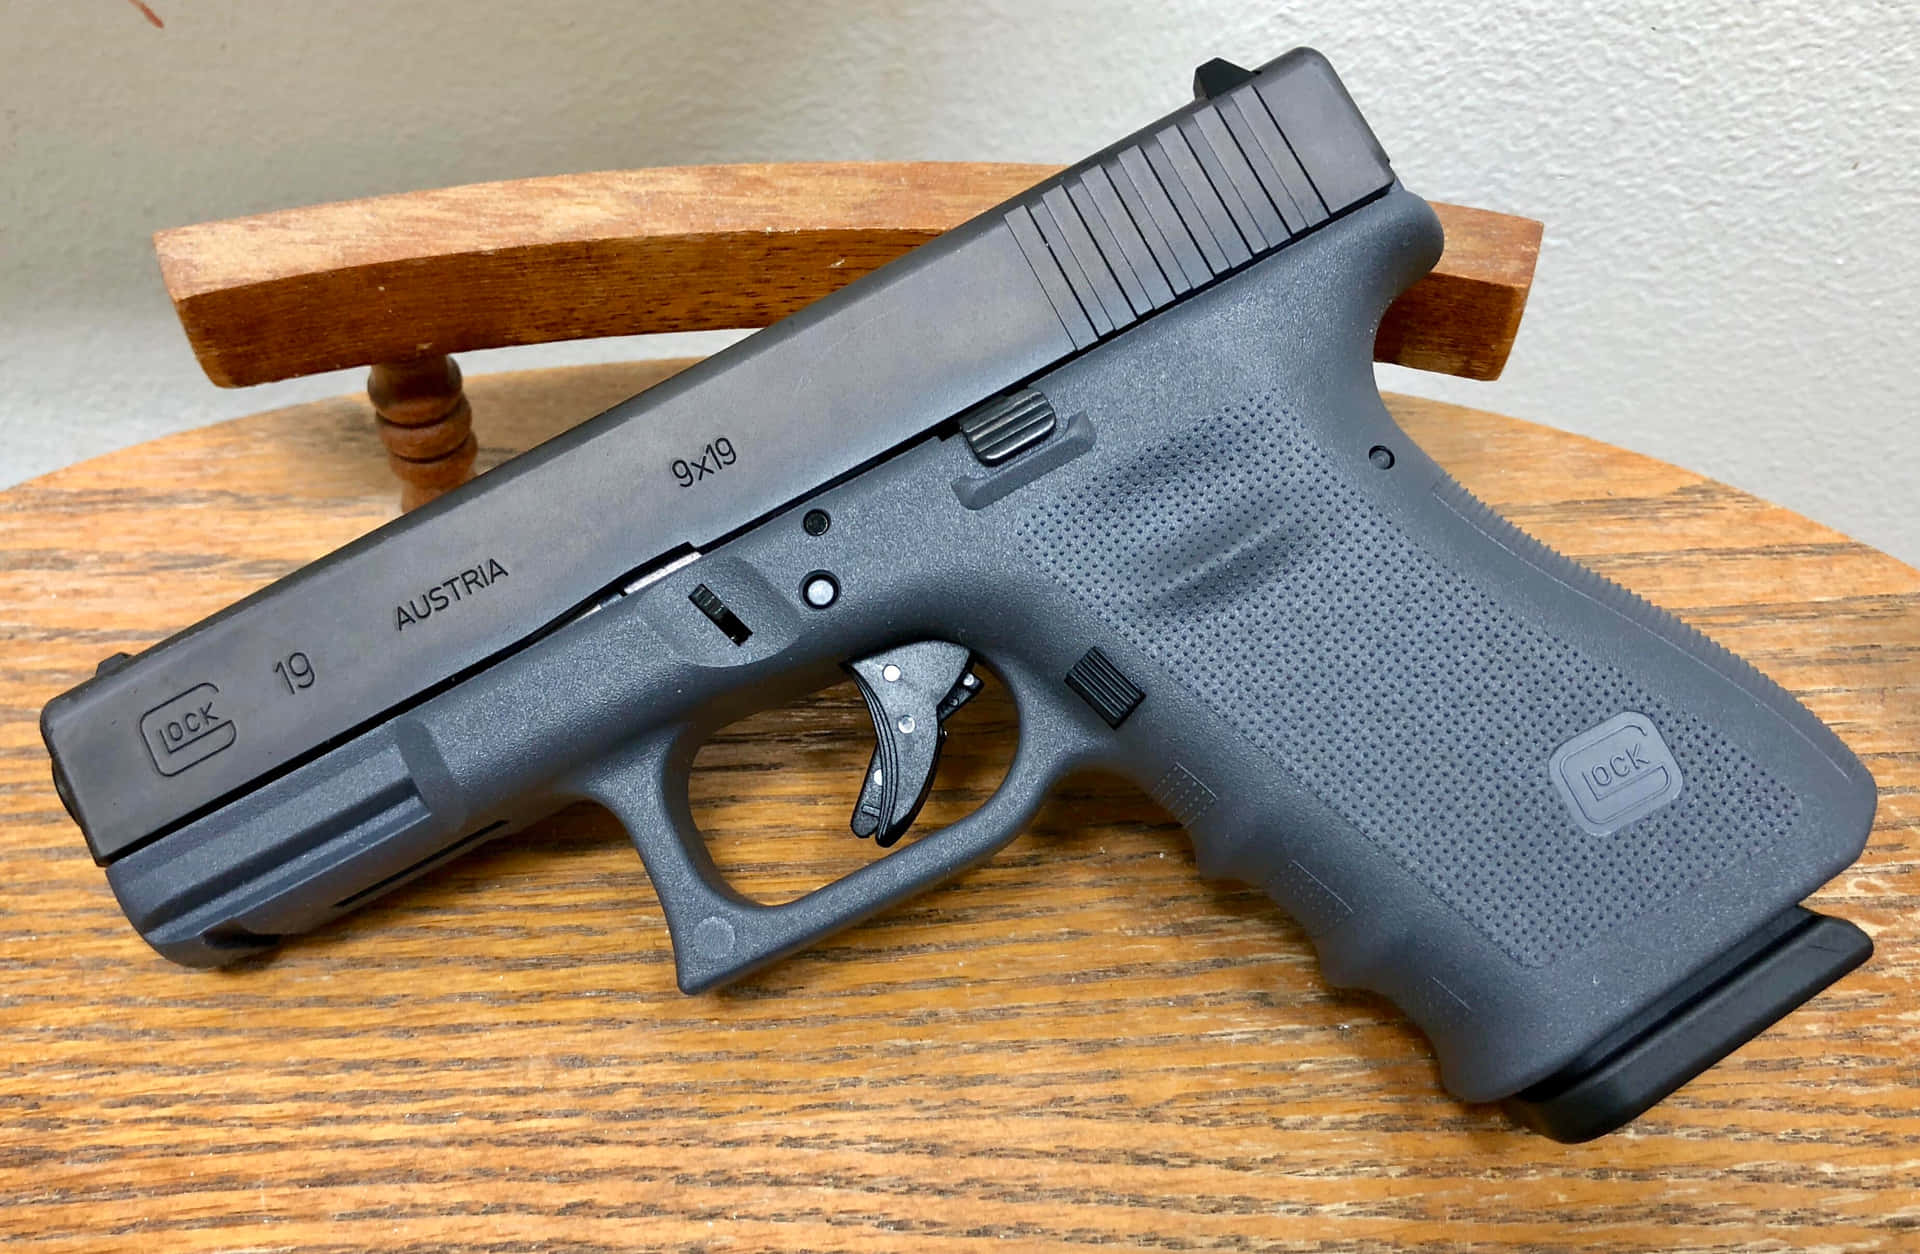 Paraautodefensa Y Protección En El Hogar: La Glock 19